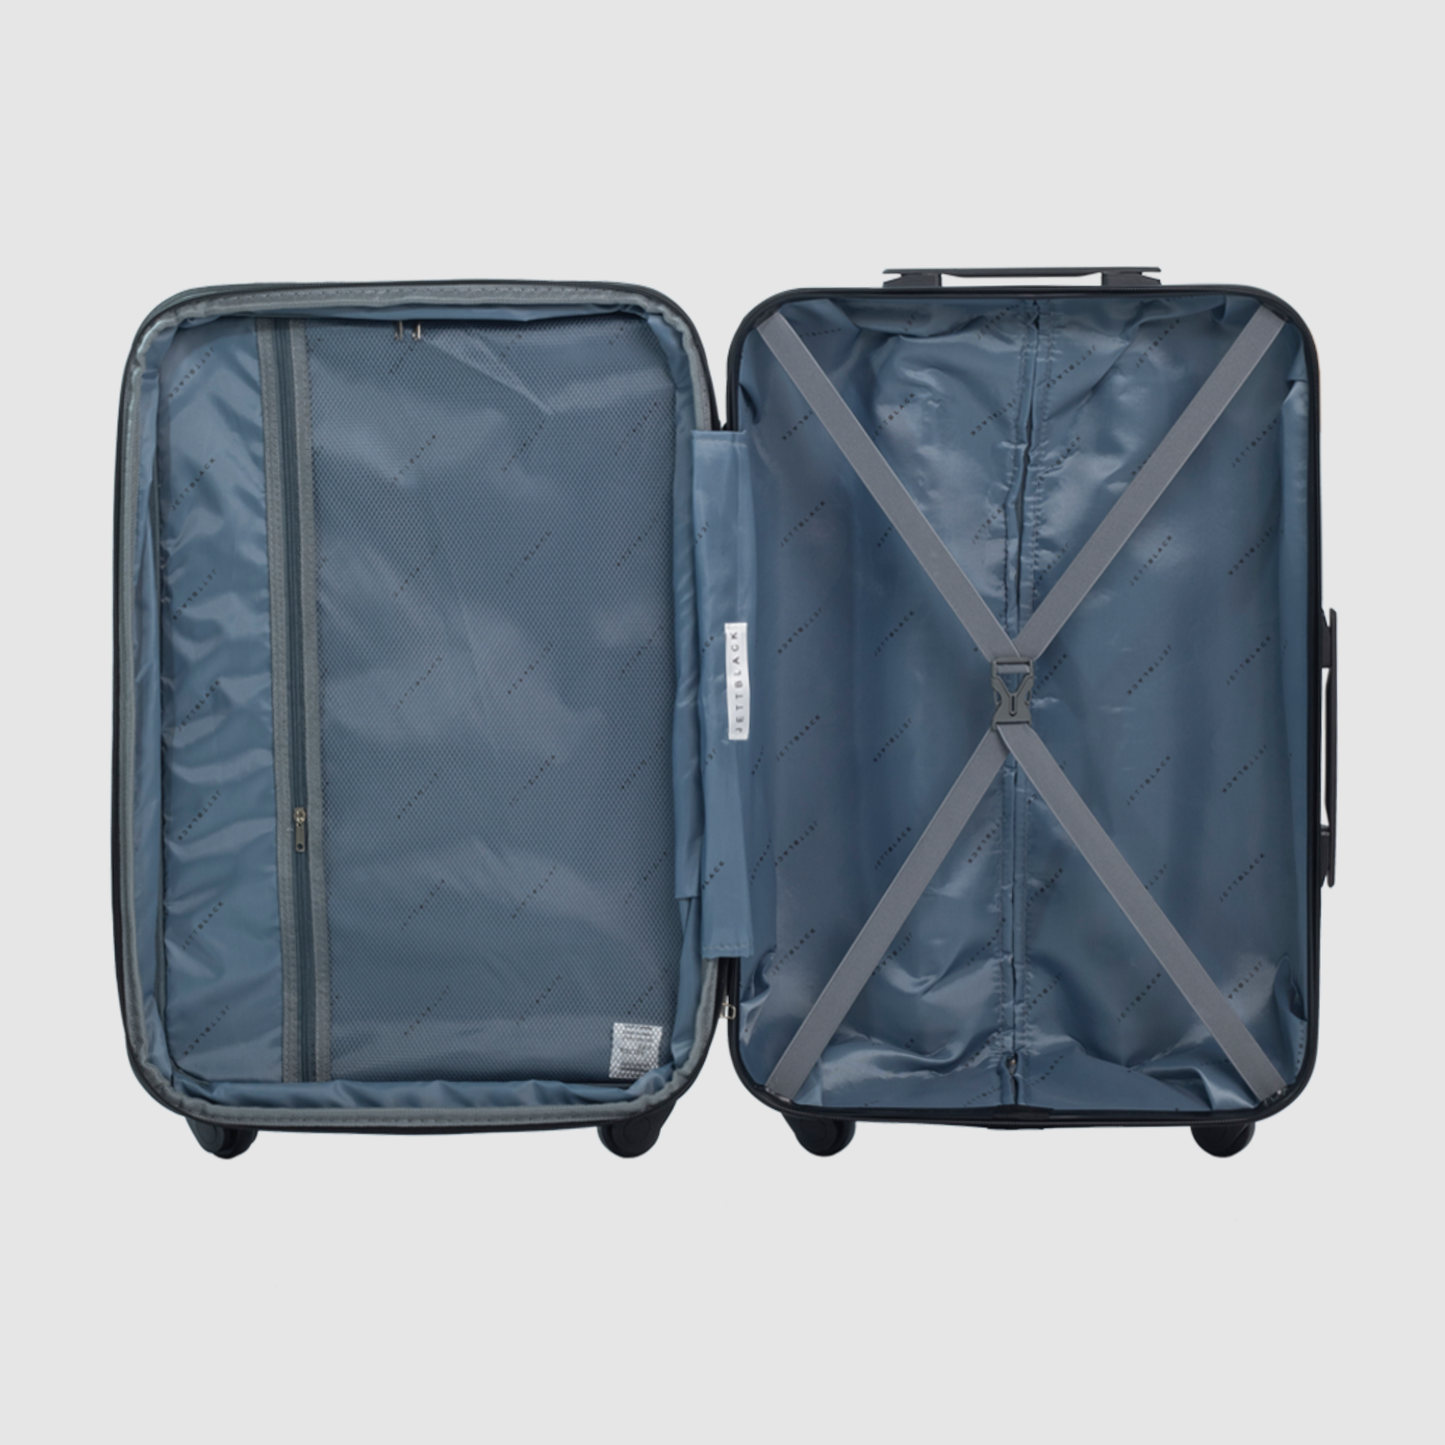 Onyx Black Paragon Medium Suitcase